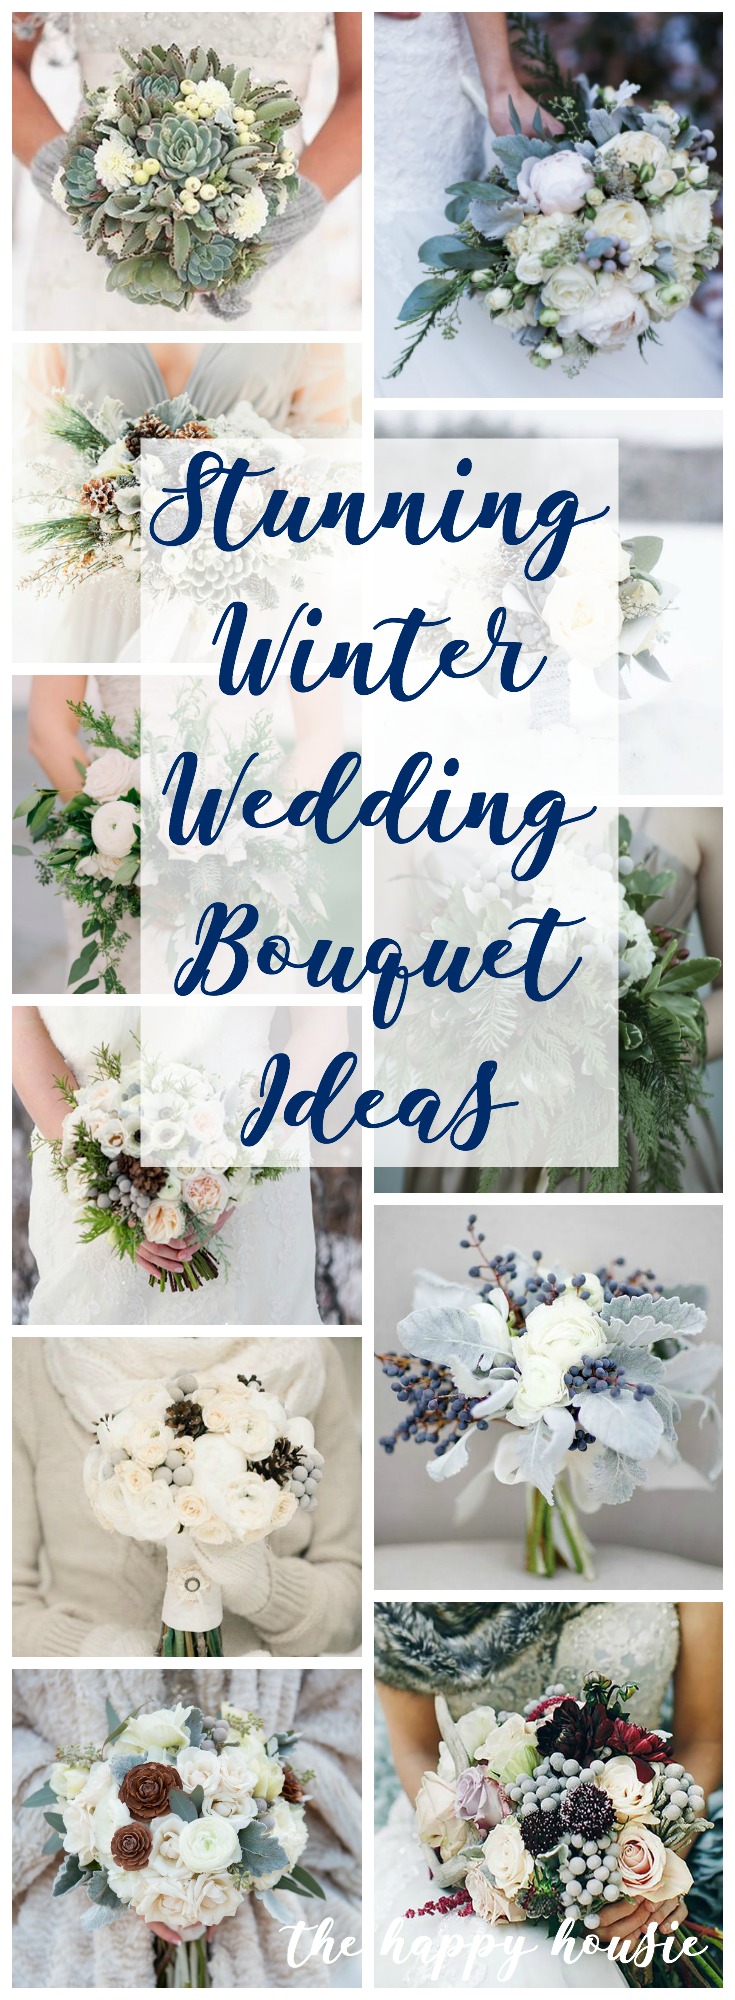 Stunning winter wedding bouquet ideas poster.